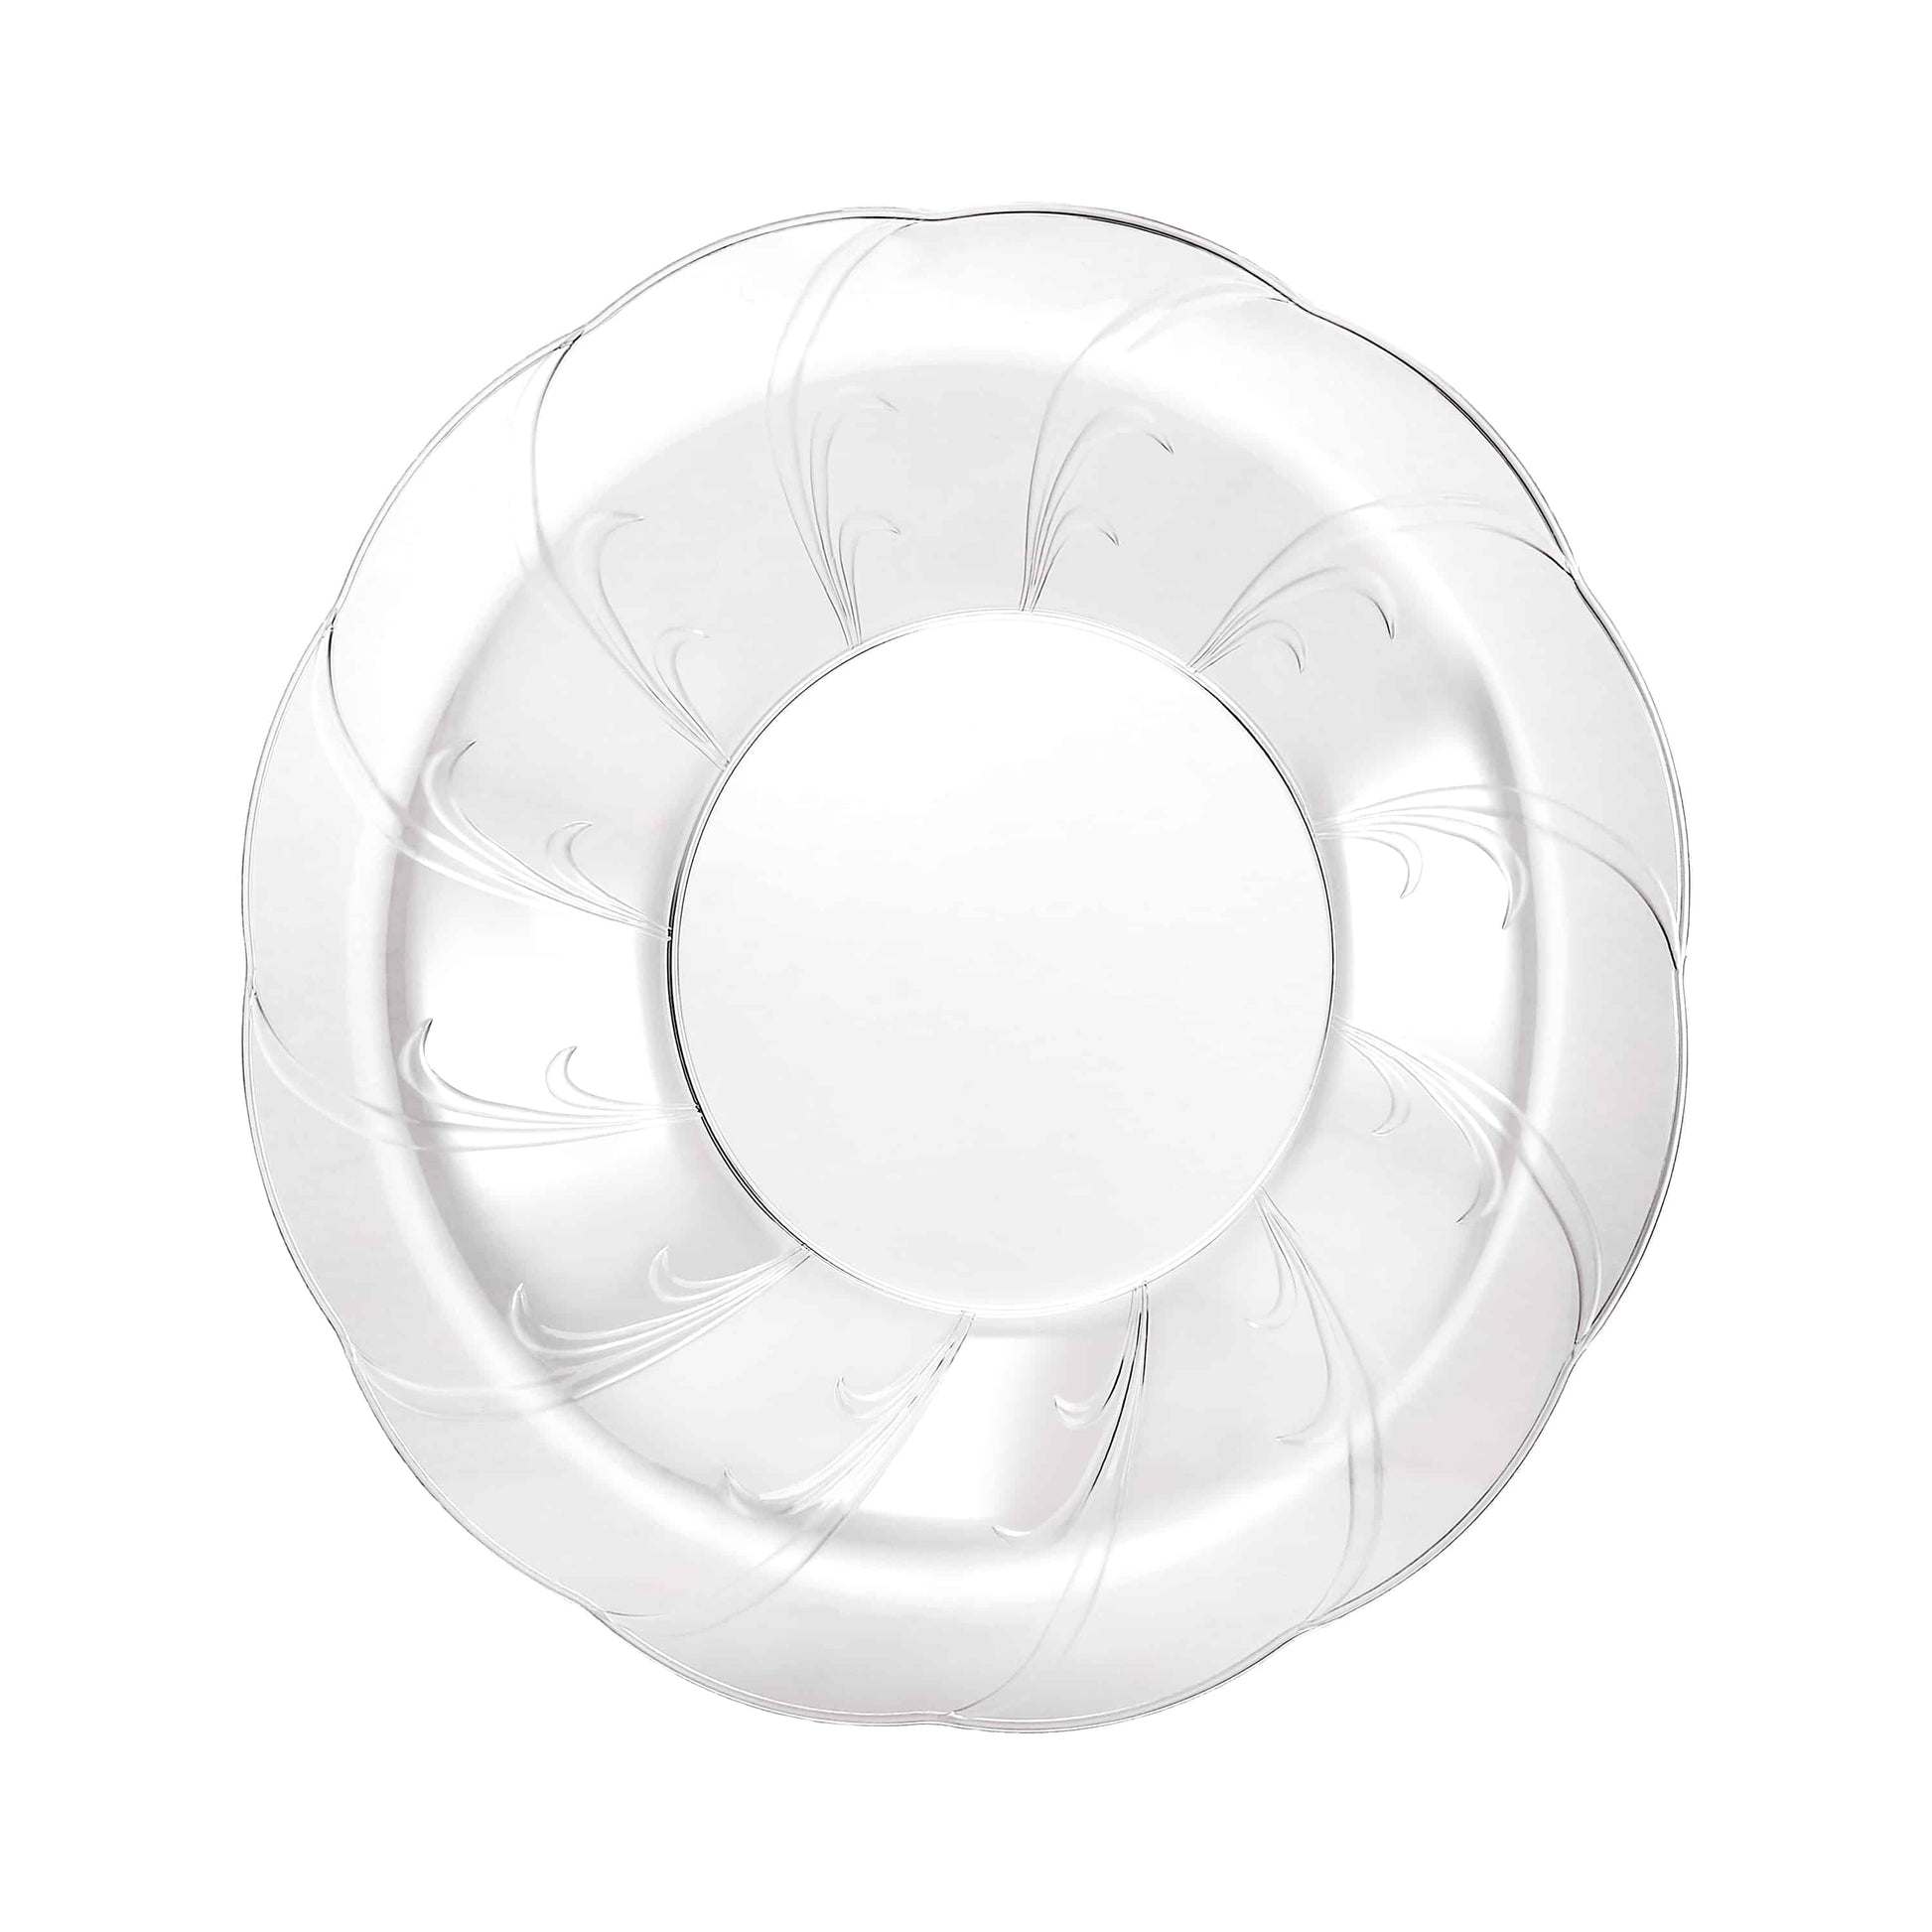 Elegance Premium Clear Plastic Round Dinner Bowl